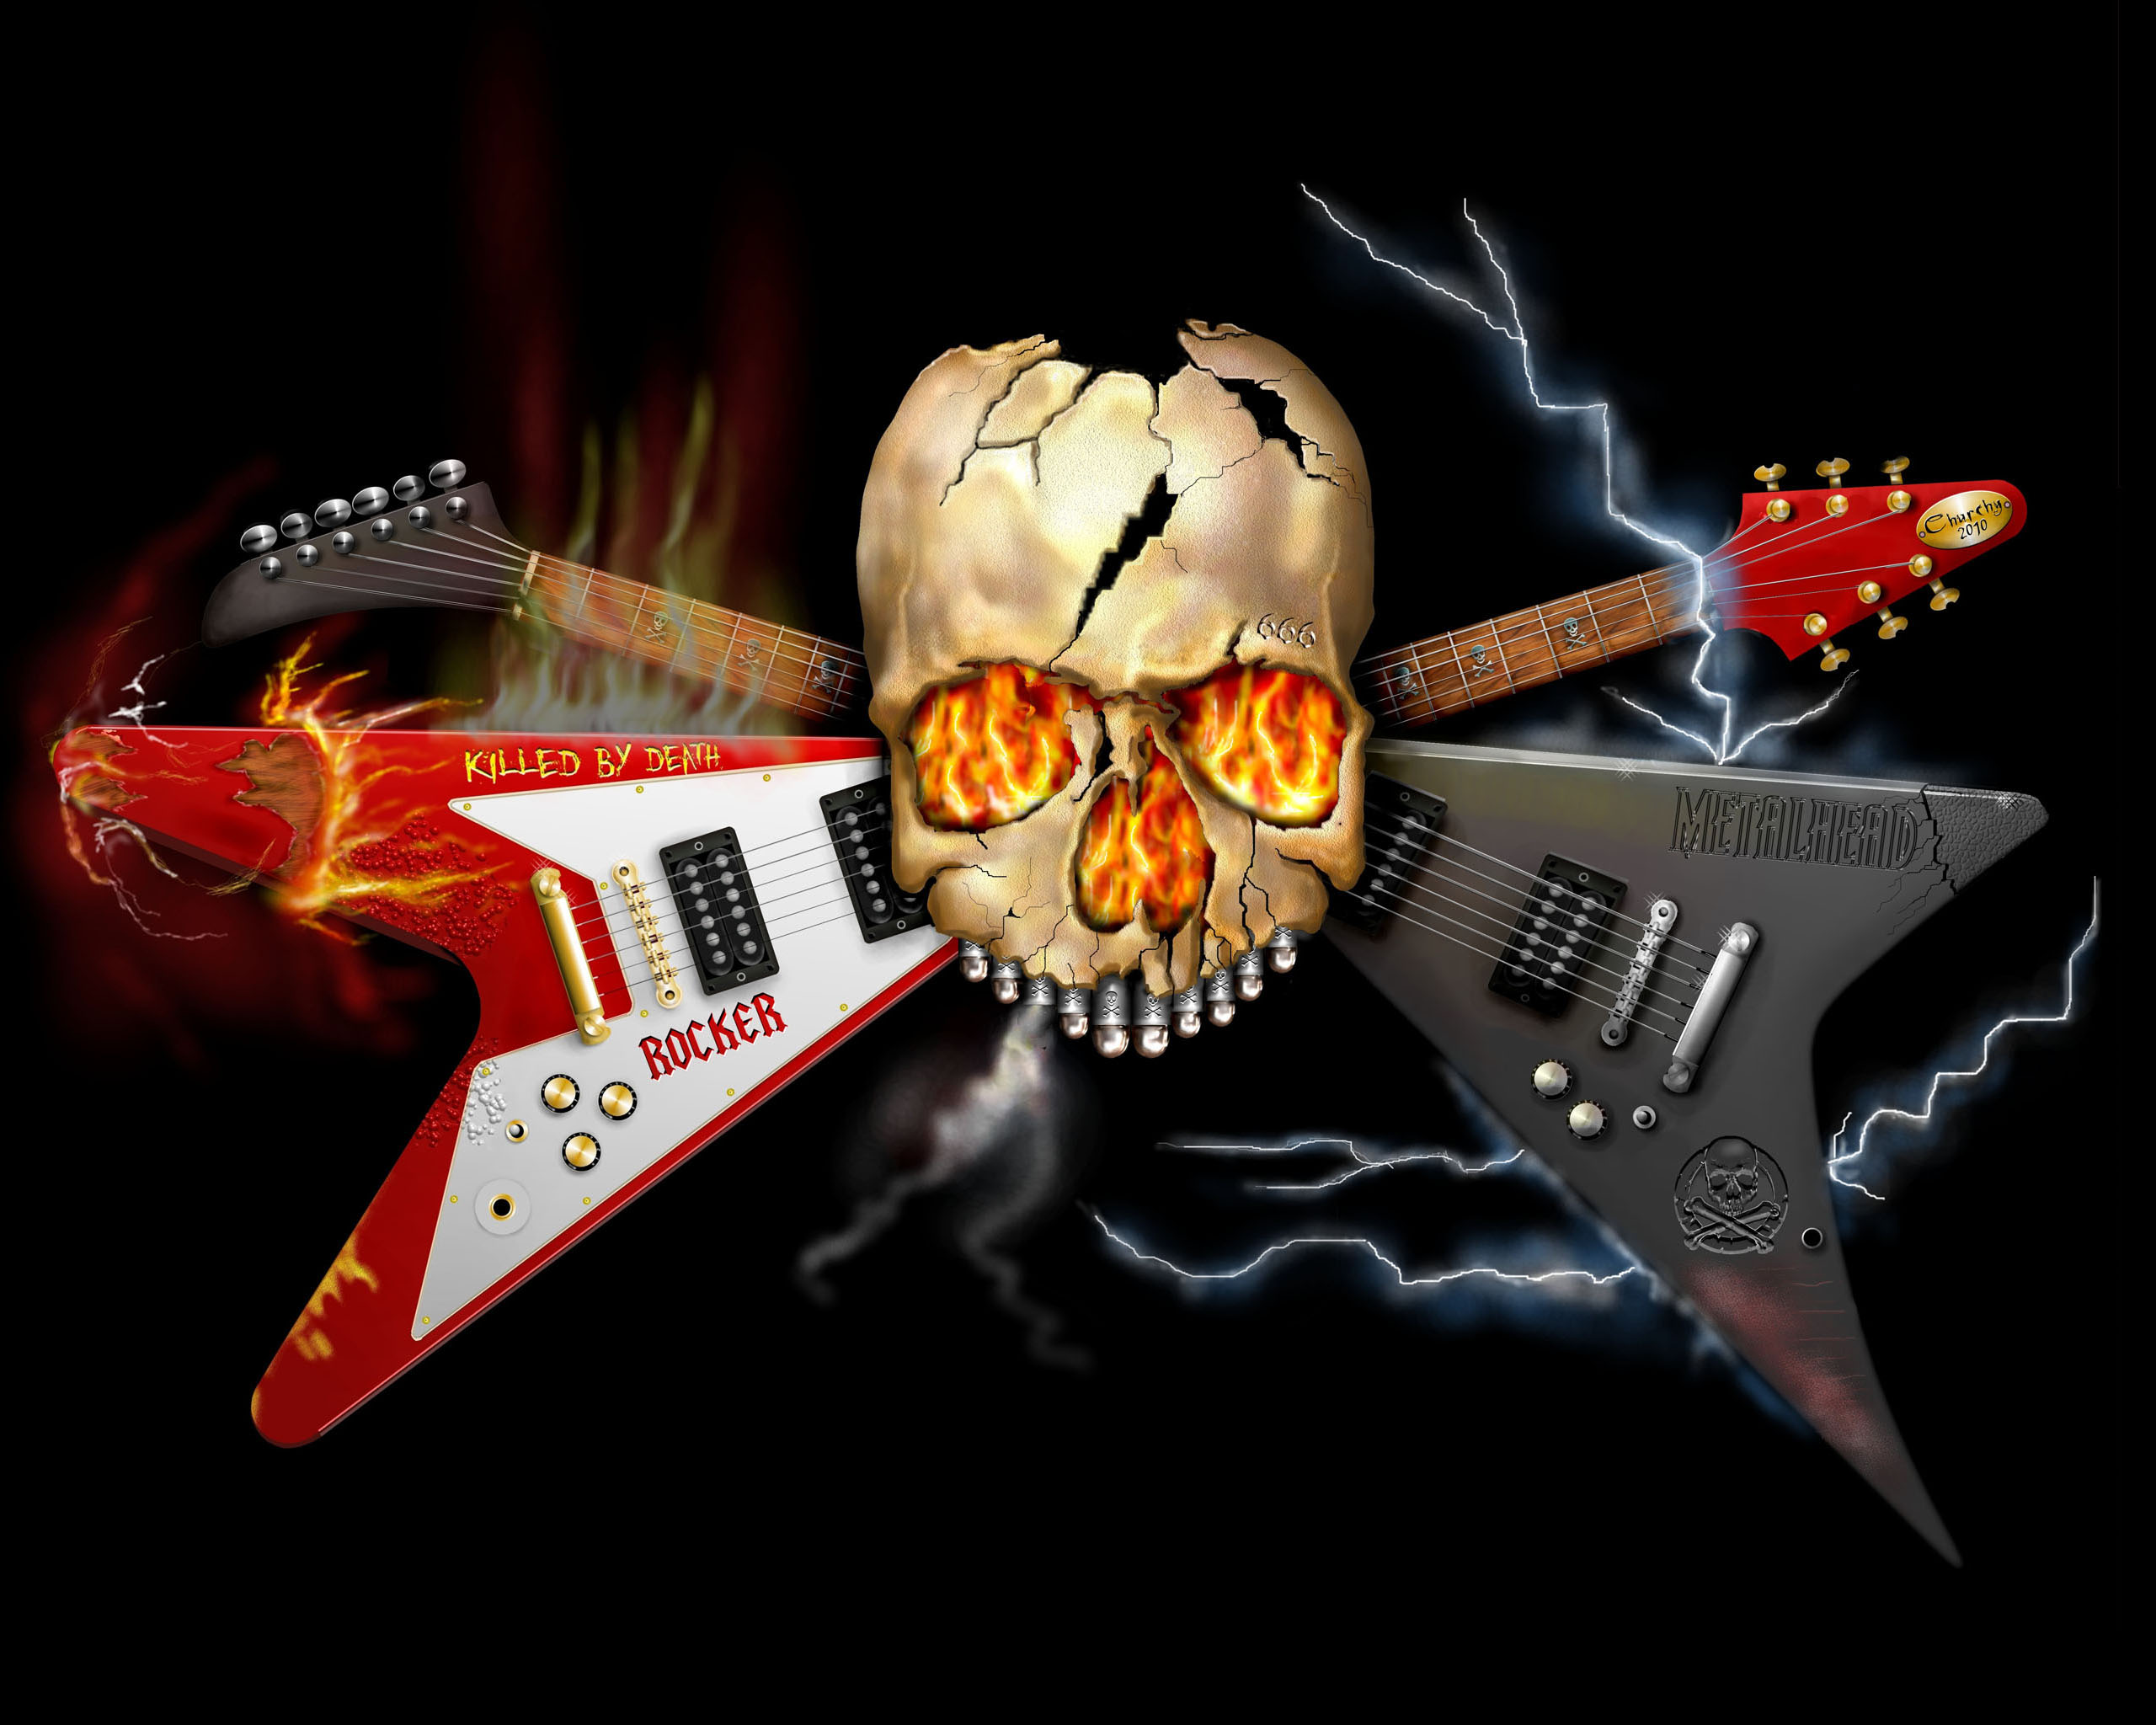 heavy metal rock tapete,gitarre,elektrische gitarre,gitarrist,musikinstrument,gezupfte saiteninstrumente